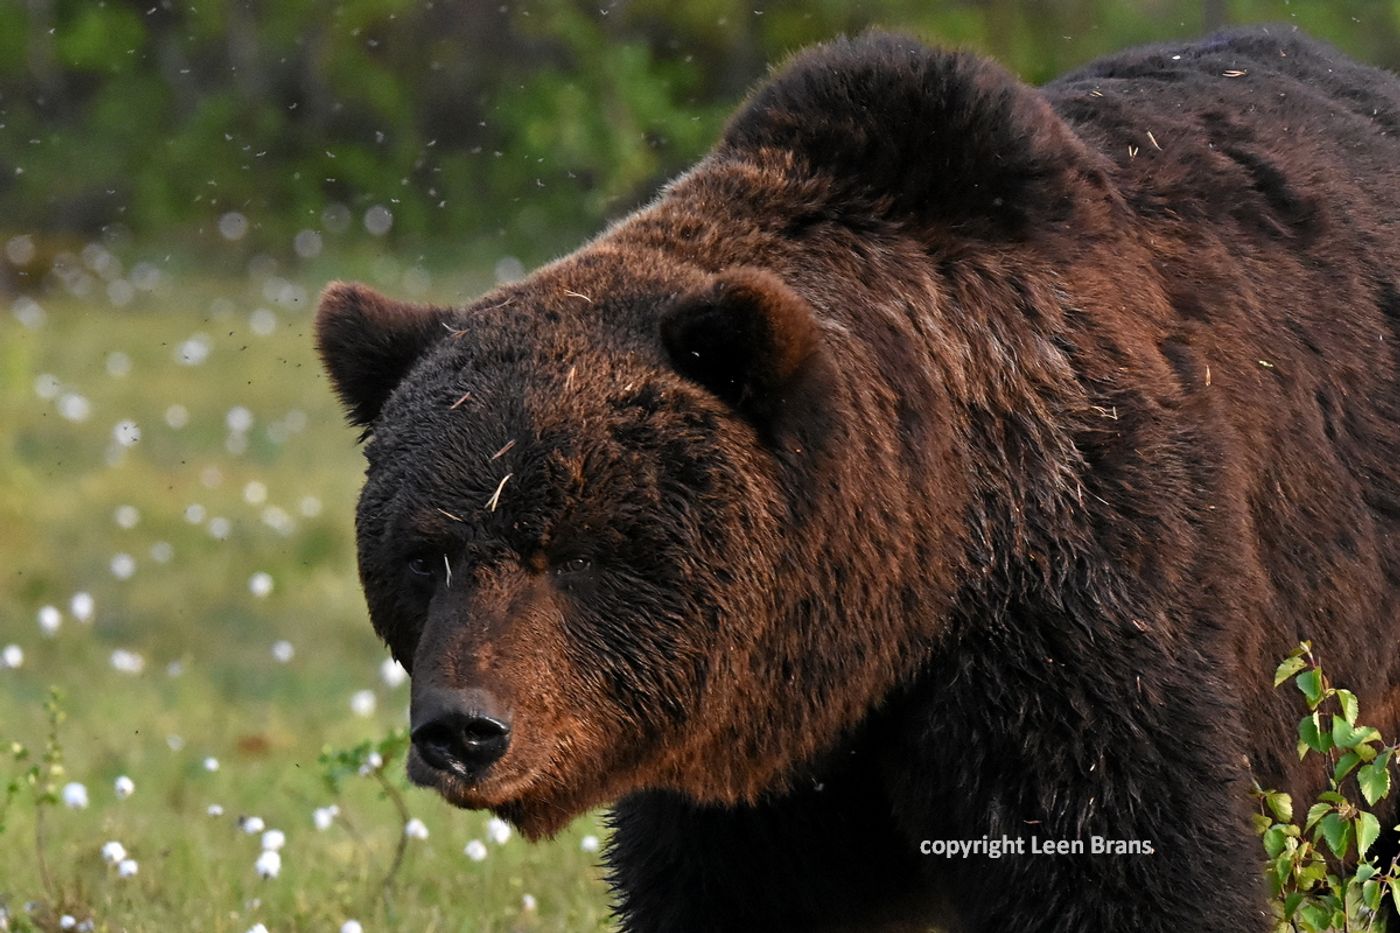 Oude beer met zwerm muggen rond zijn kop © Leen Brans